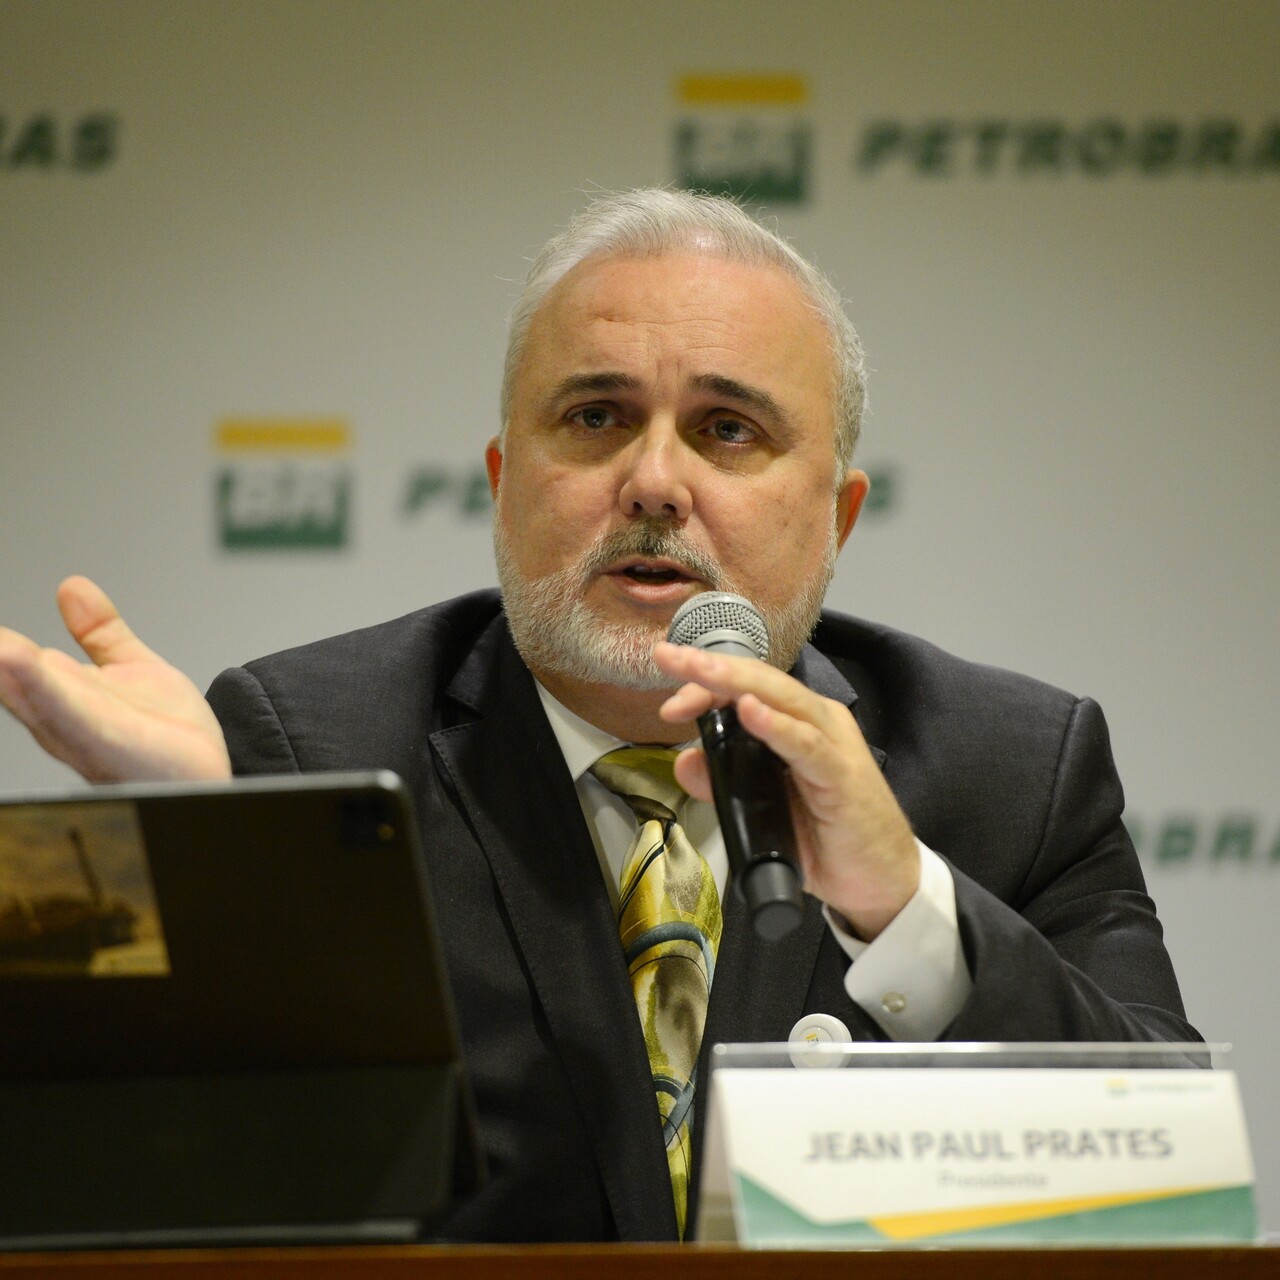 Após anúncio de alta, presidente da Petrobras diz que política de preços continua eficiente e que ajuste é 'justo'